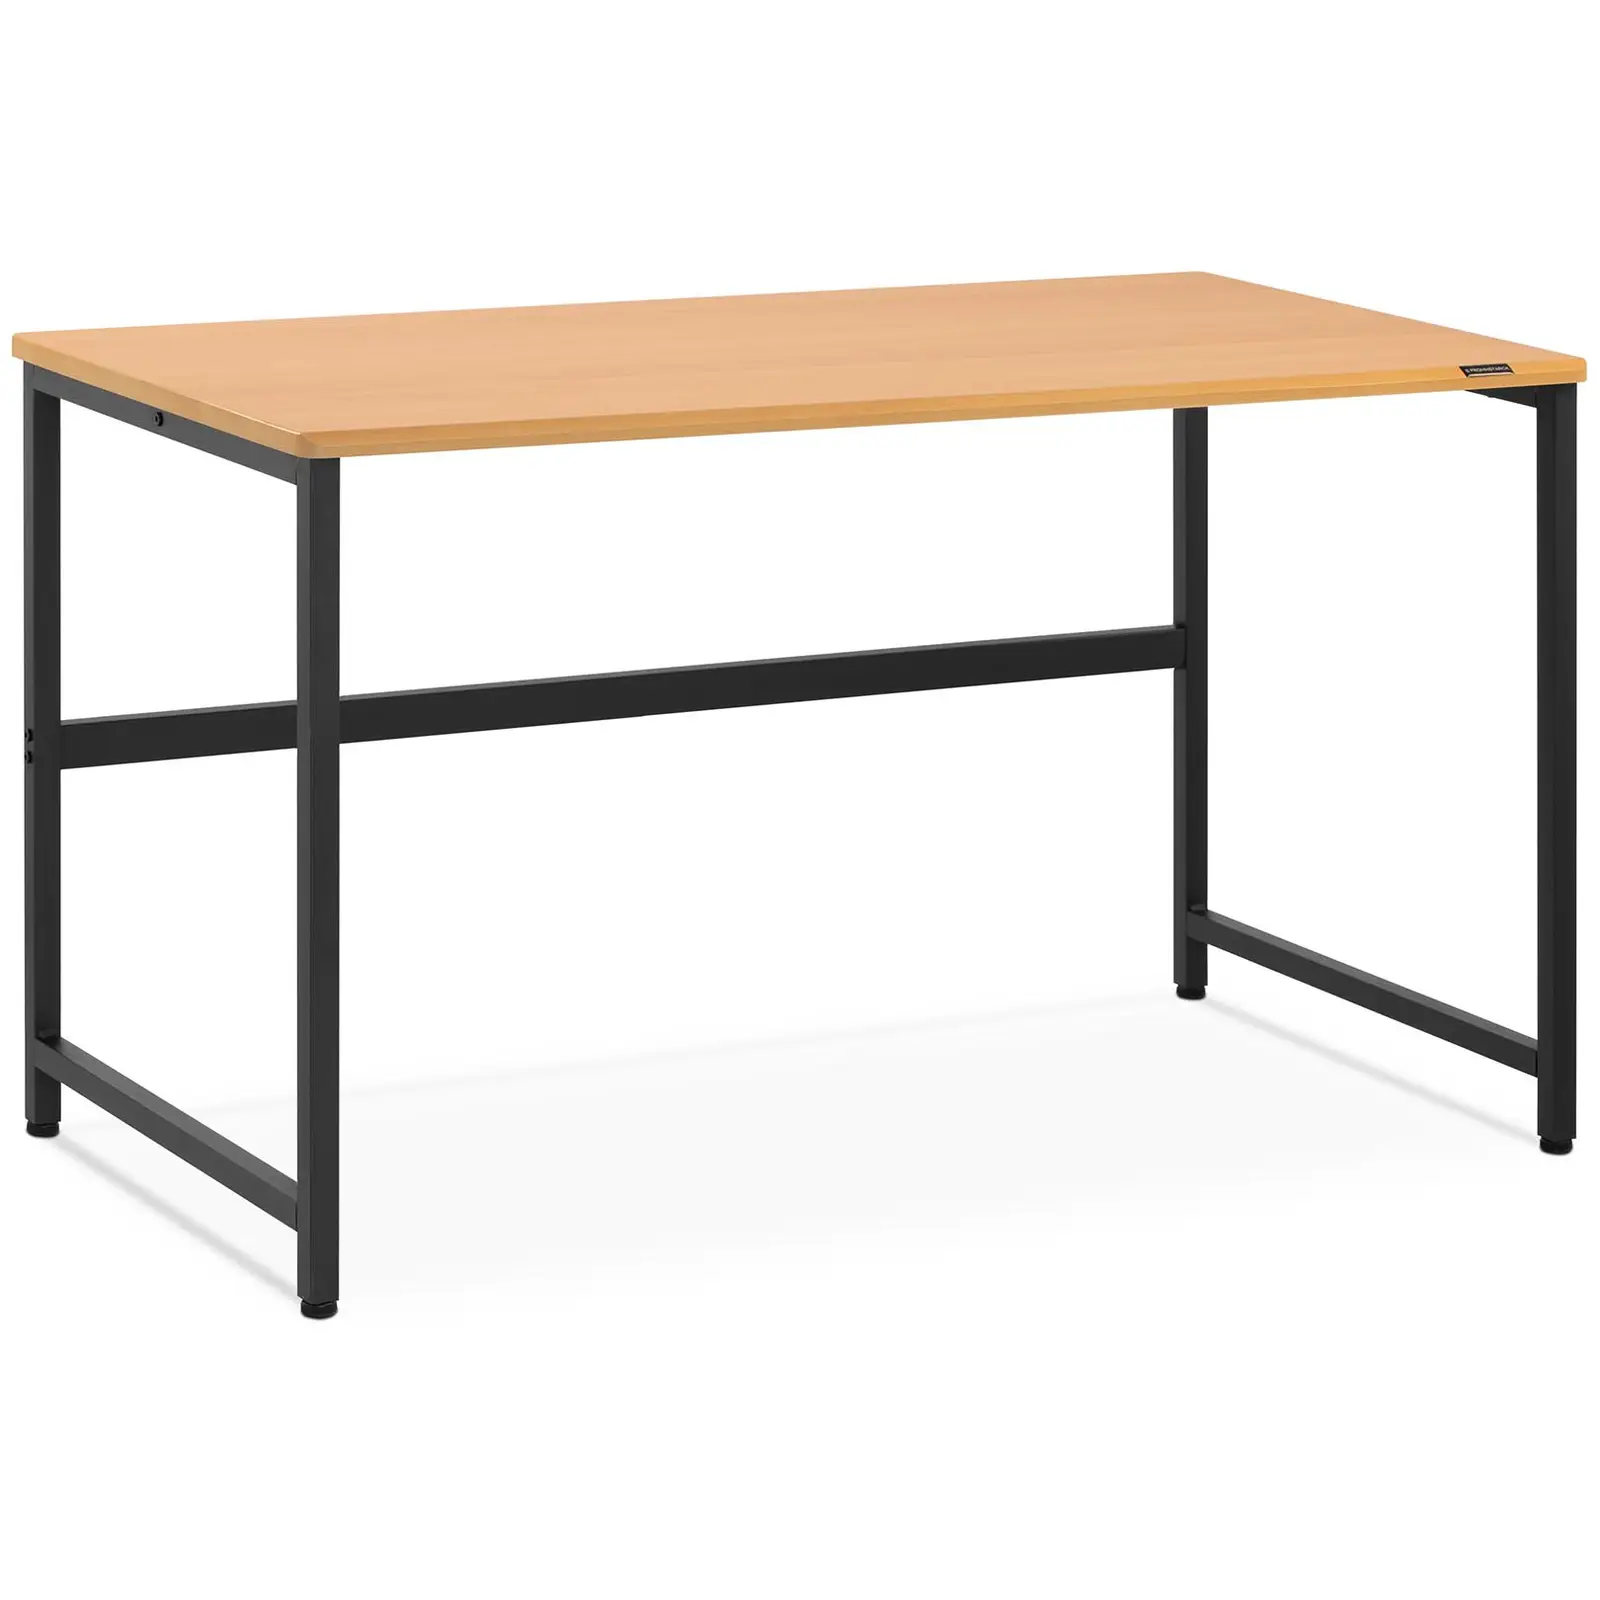 Íróasztal - 120 x 60 cm - barna | Fromm & Starck